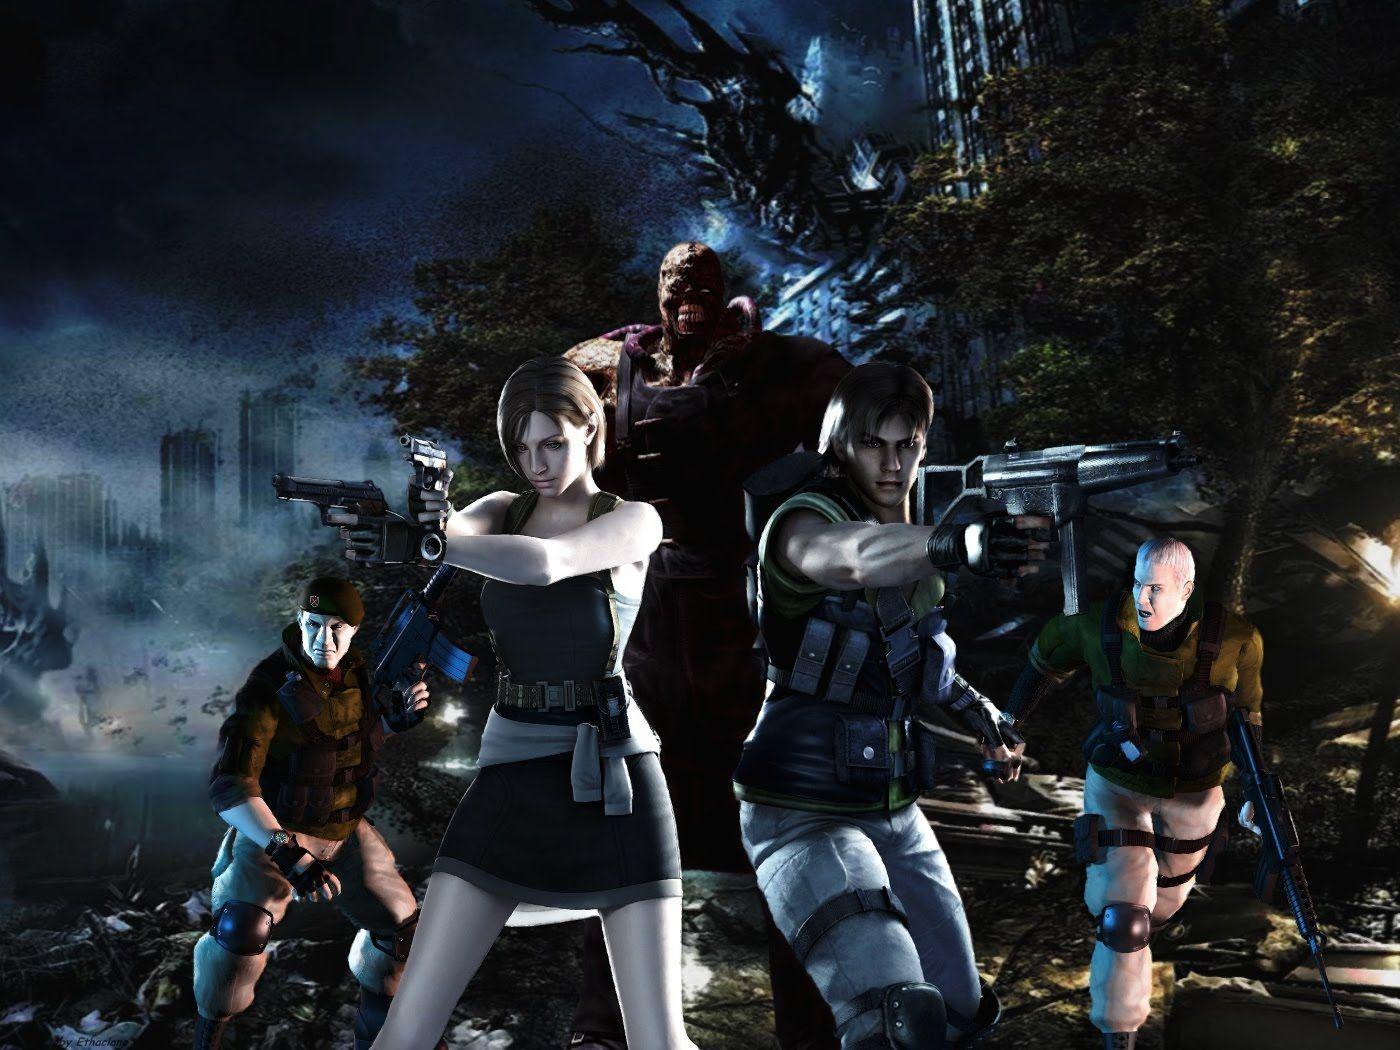 Resident Evil 3: Nemesis Wallpaper